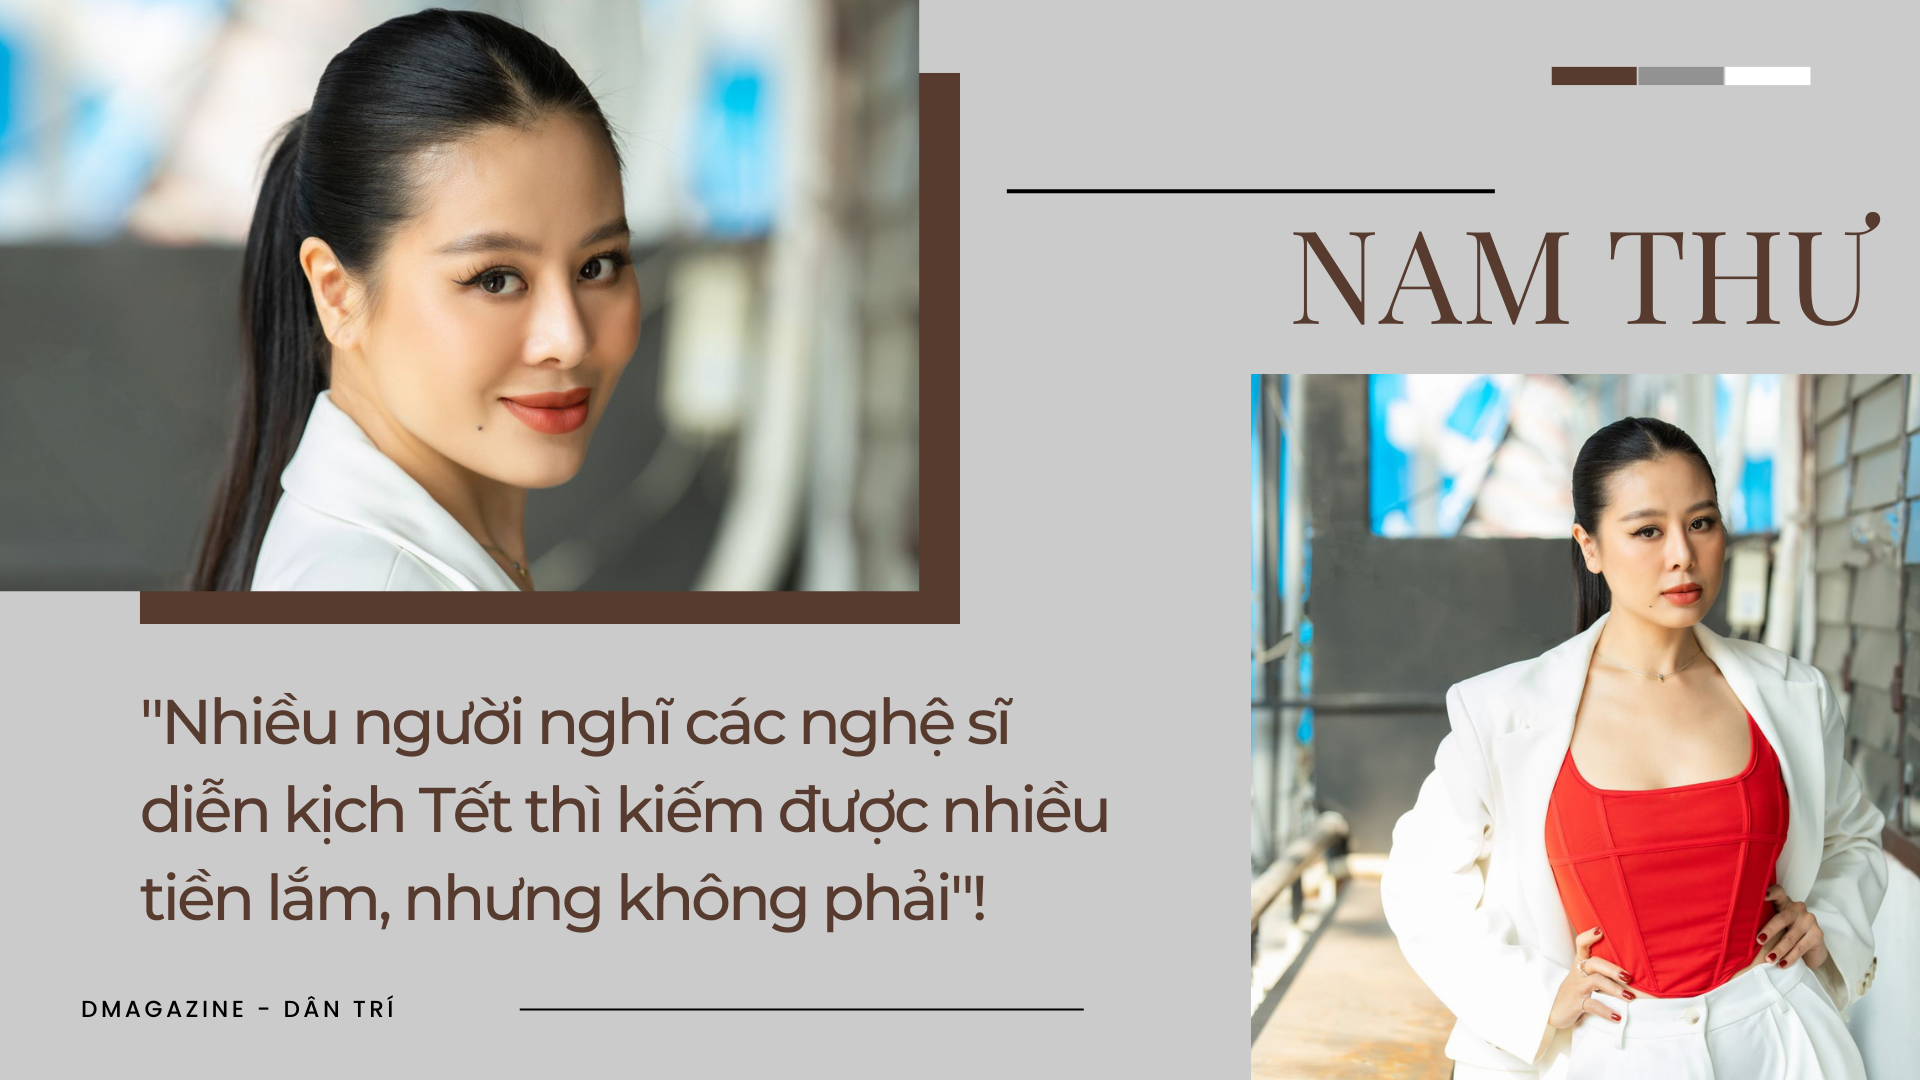 Kiều nữ làng hài Nam Thư: 19 tuổi, tôi suýt bị lừa khi đi casting phim - 1